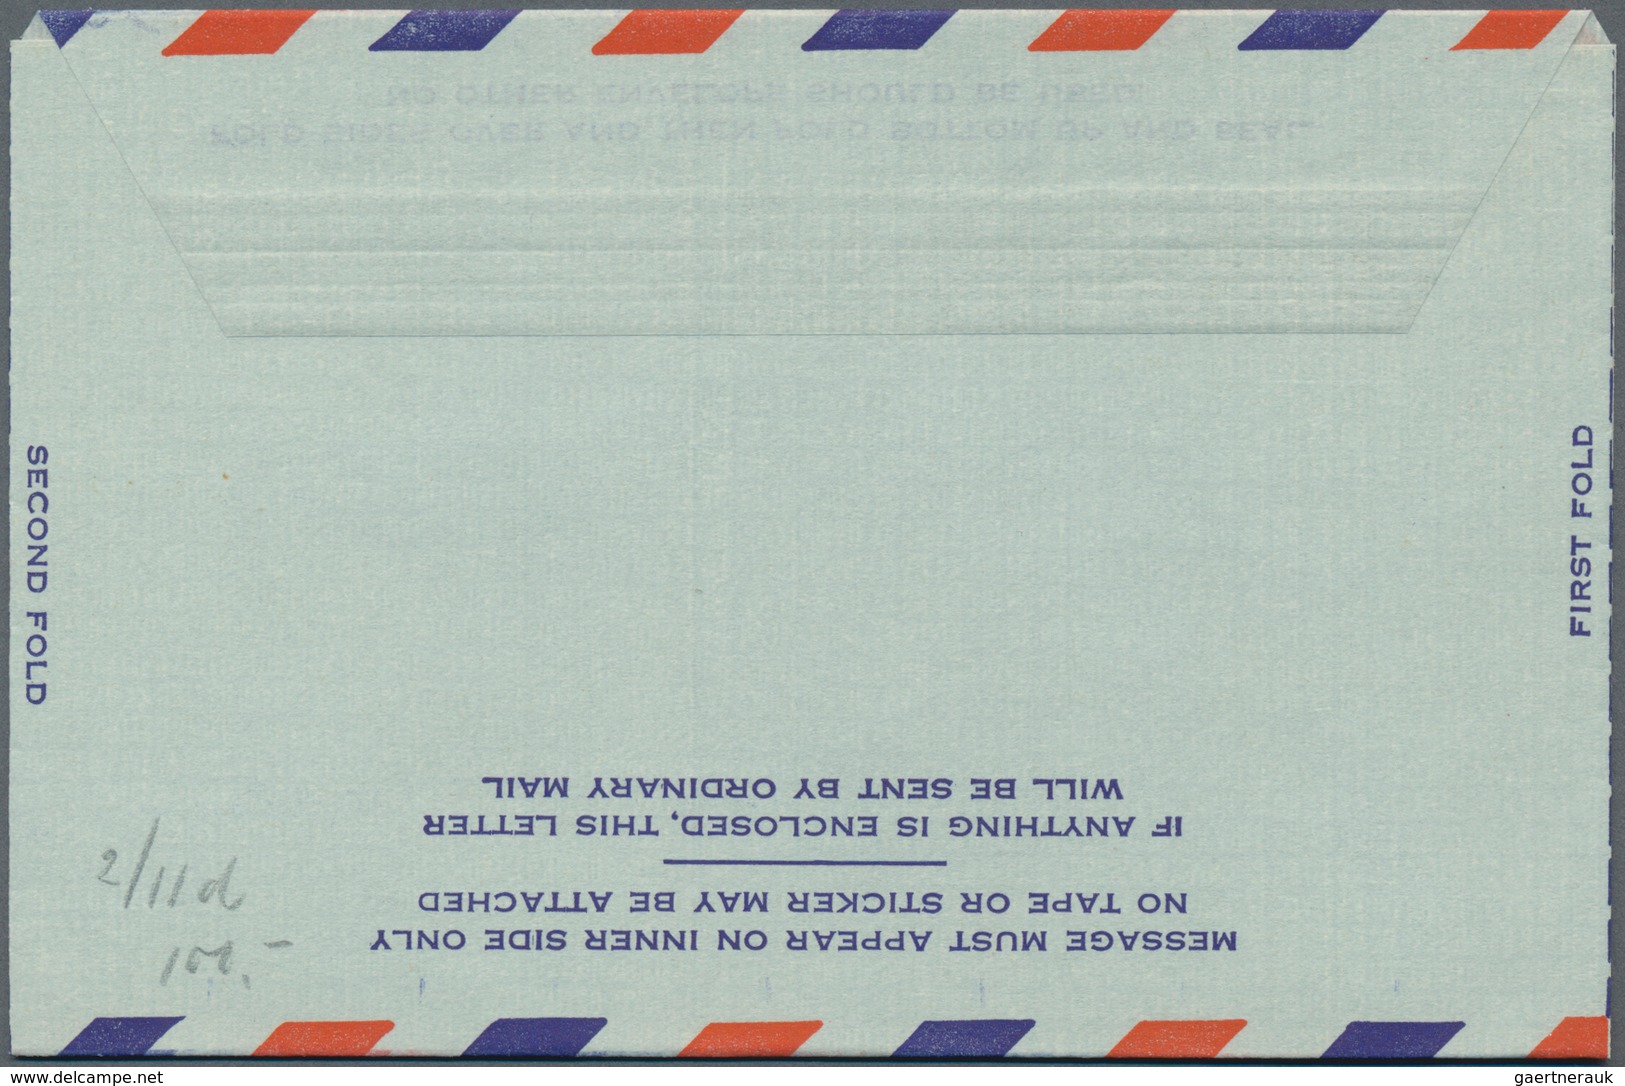 Vereinigte Staaten von Amerika - Ganzsachen: 1947/55 four unused postal stationery letter sheets wit